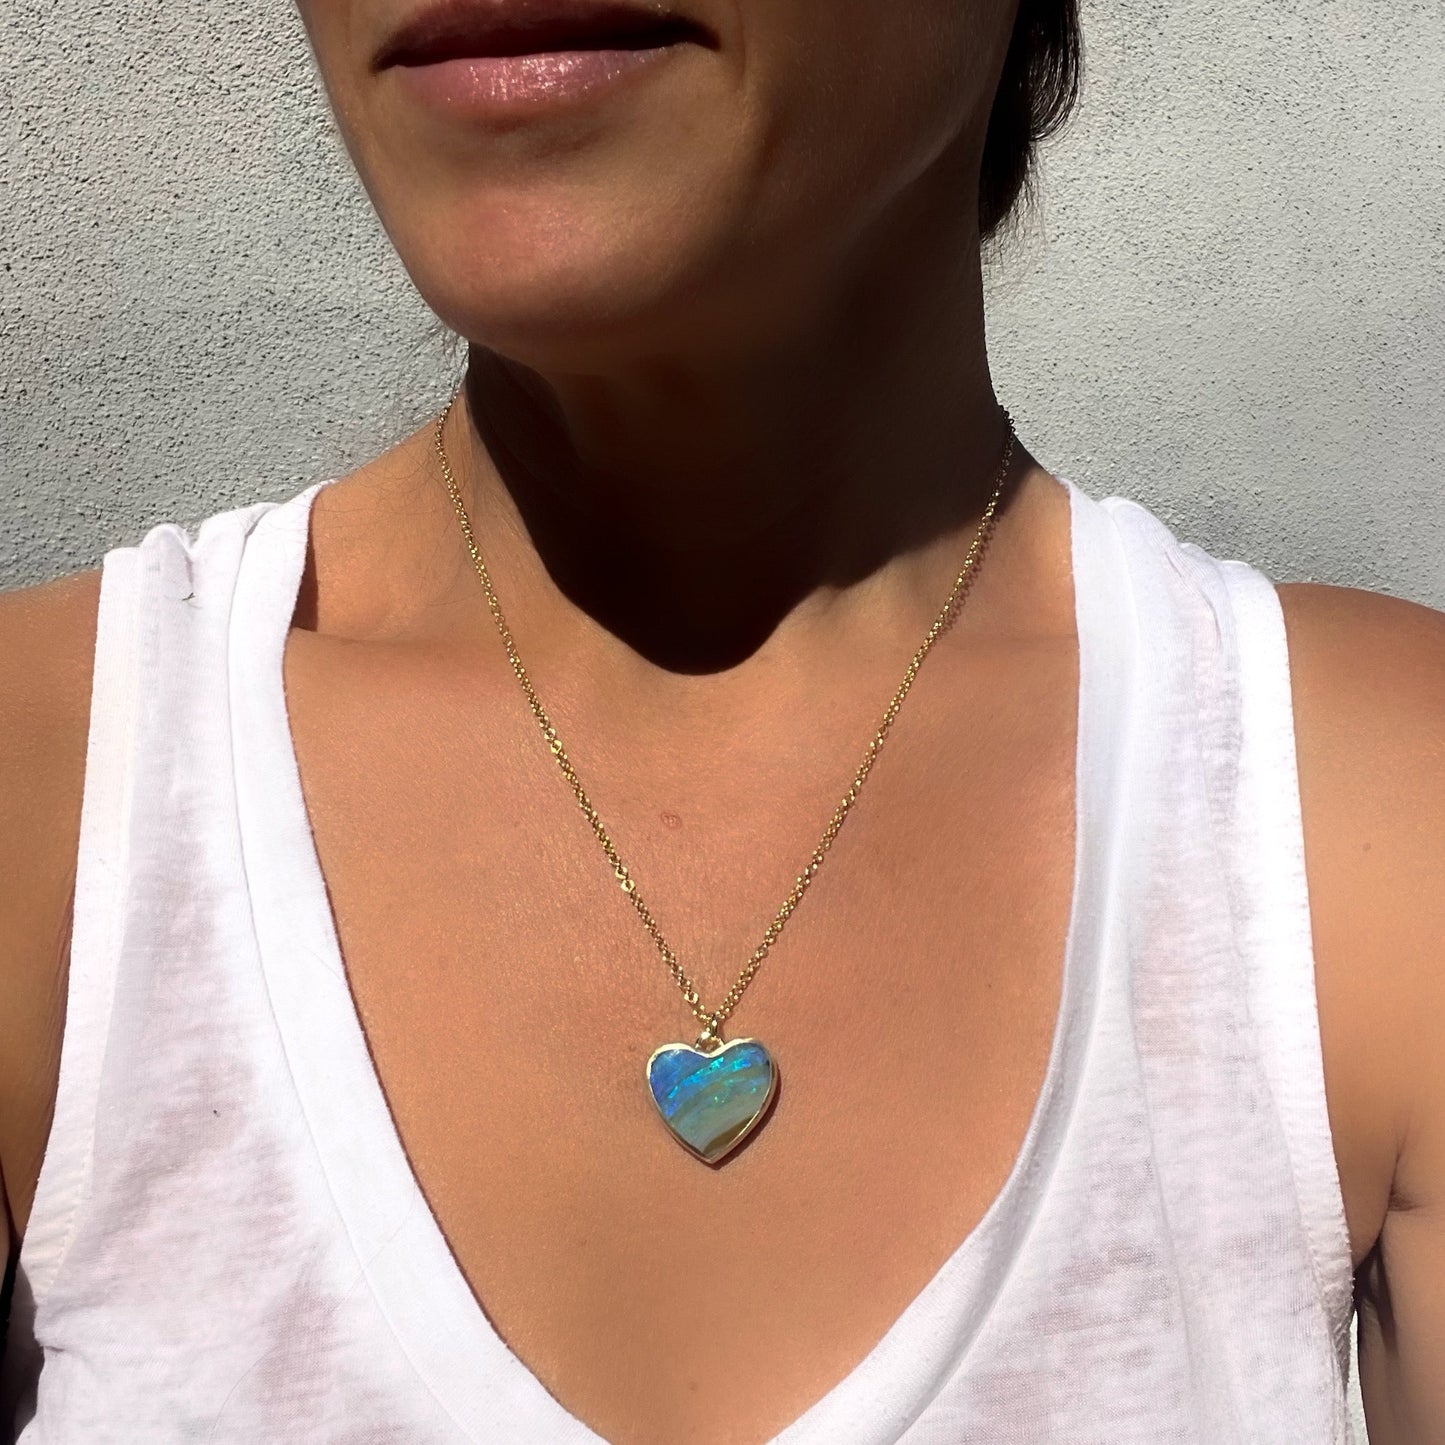 Model wearing an Australian Opal Necklace by NIXIN Jewelry with a blue opal heart set in 14k gold.